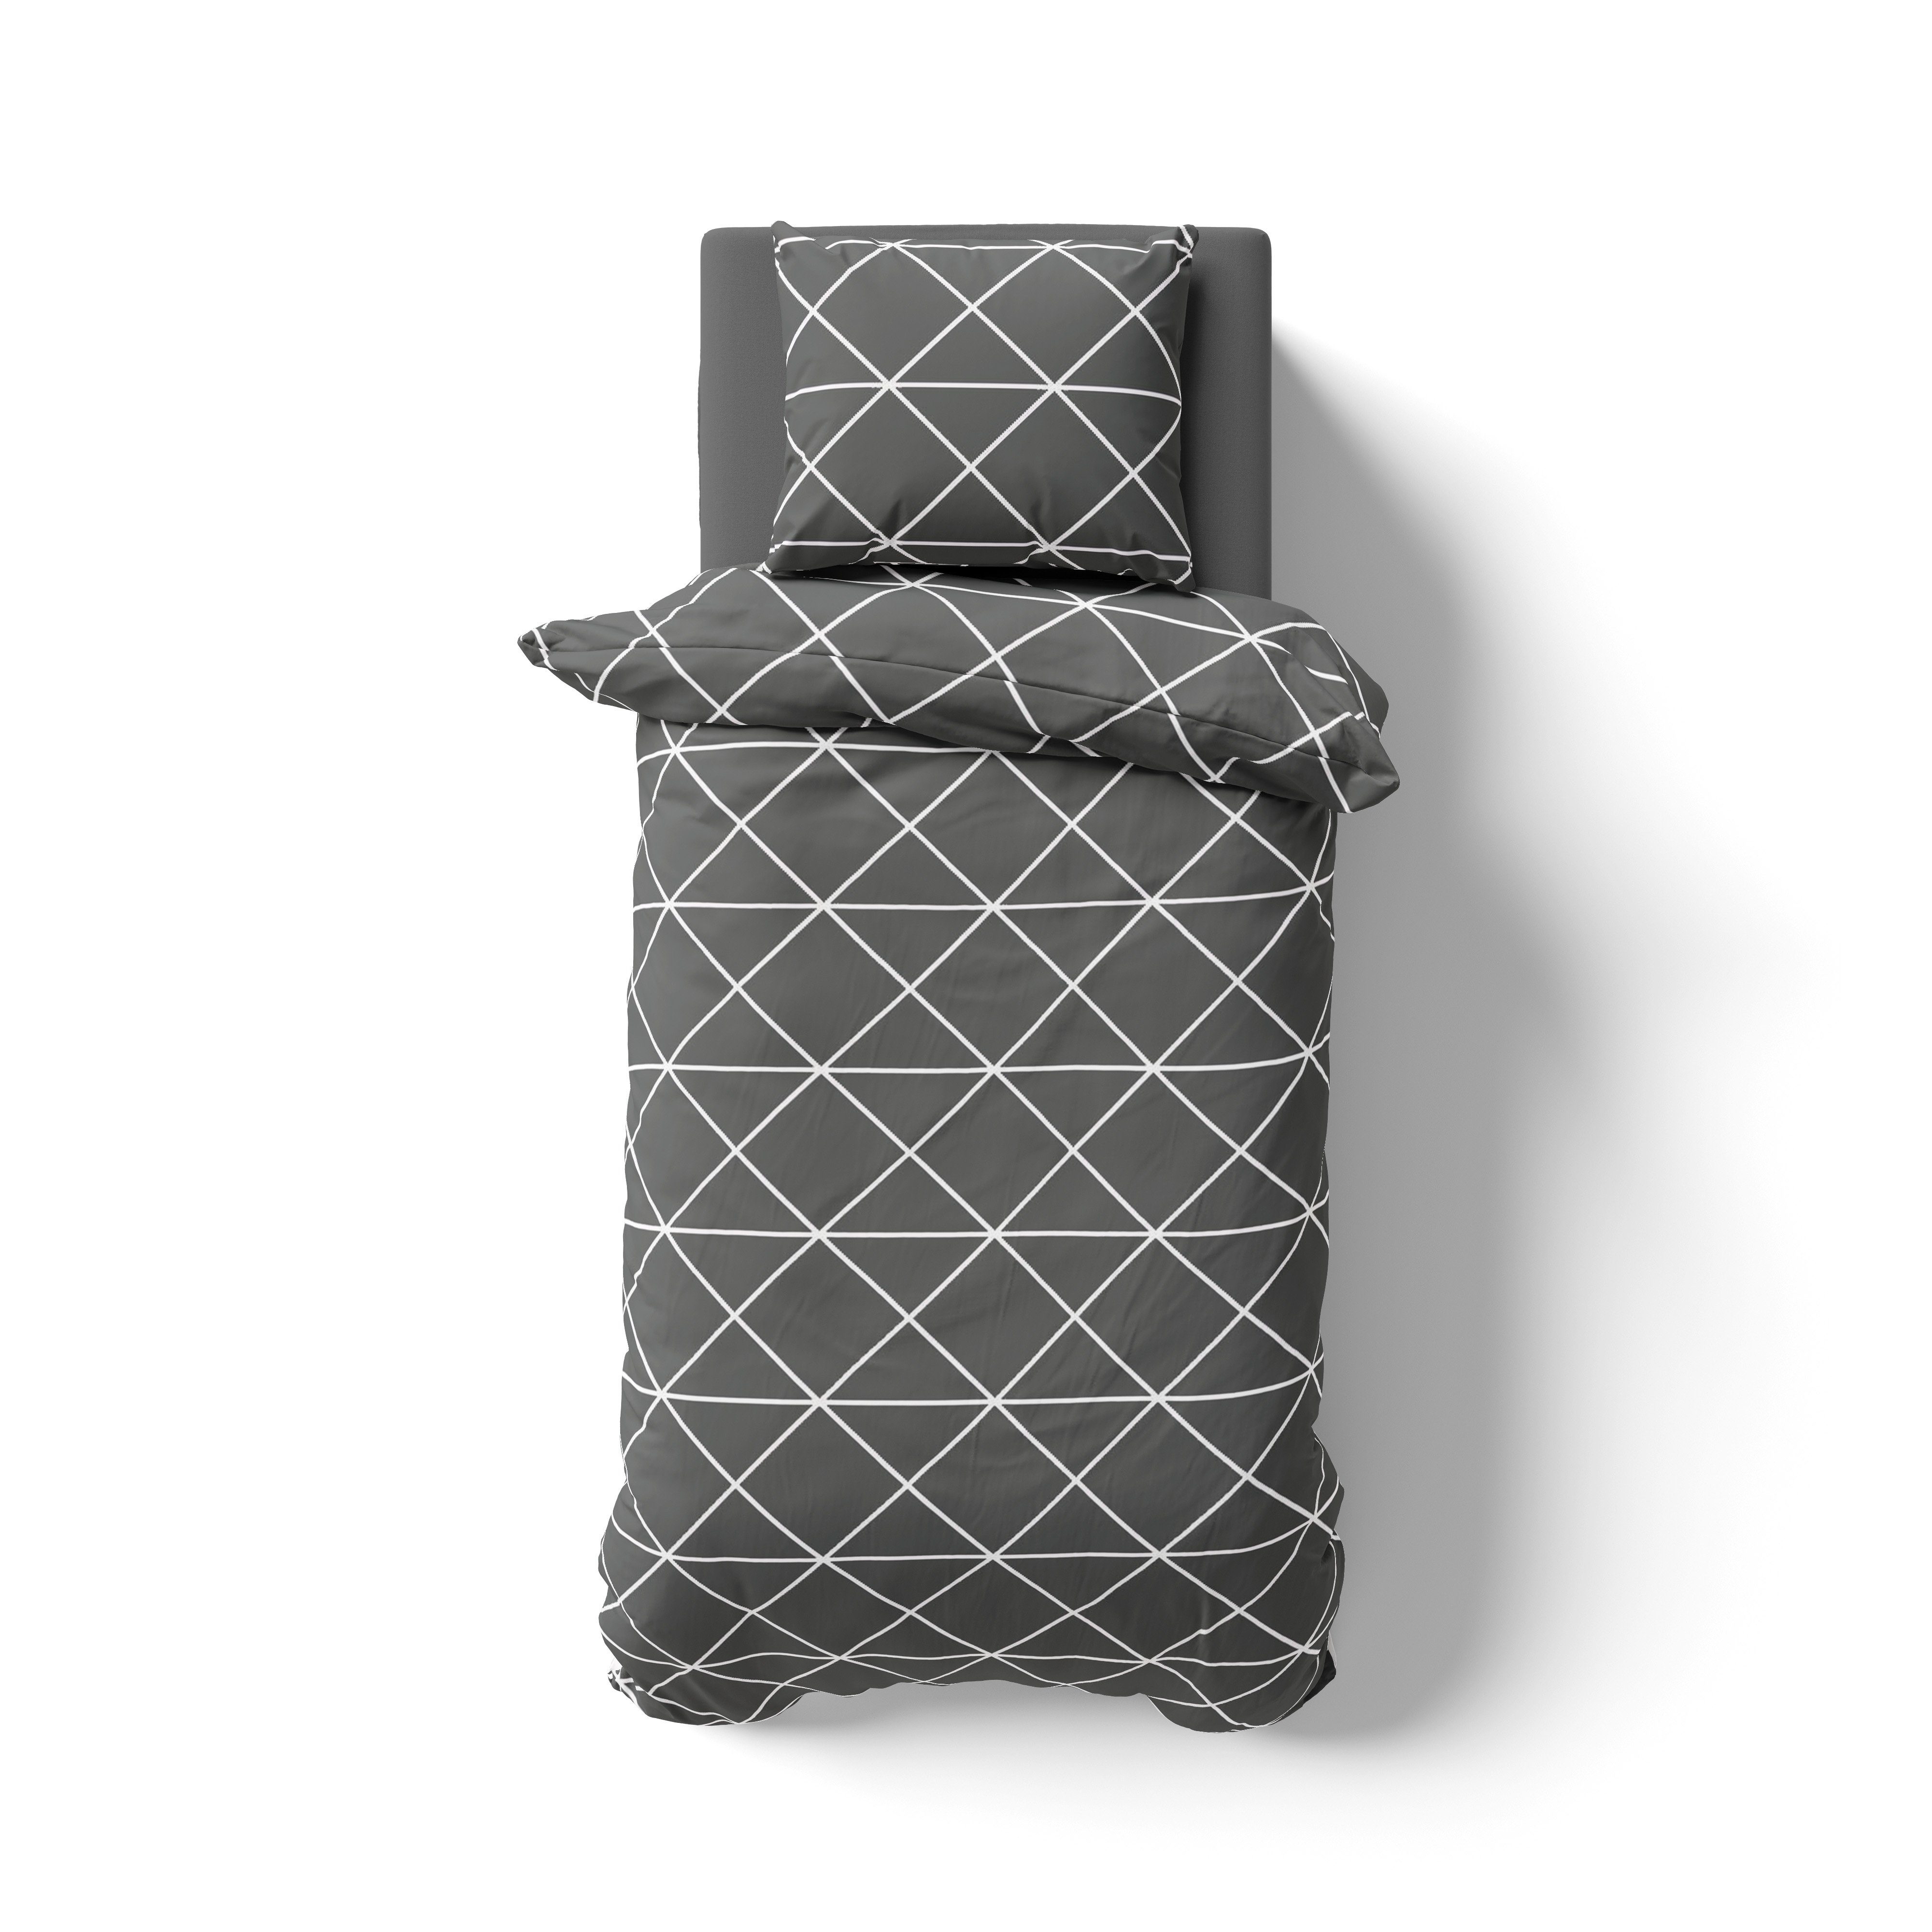 Bettwäsche im Renforce Design Set, Hometex Premium Textiles, 155x220cm + 80x80cm